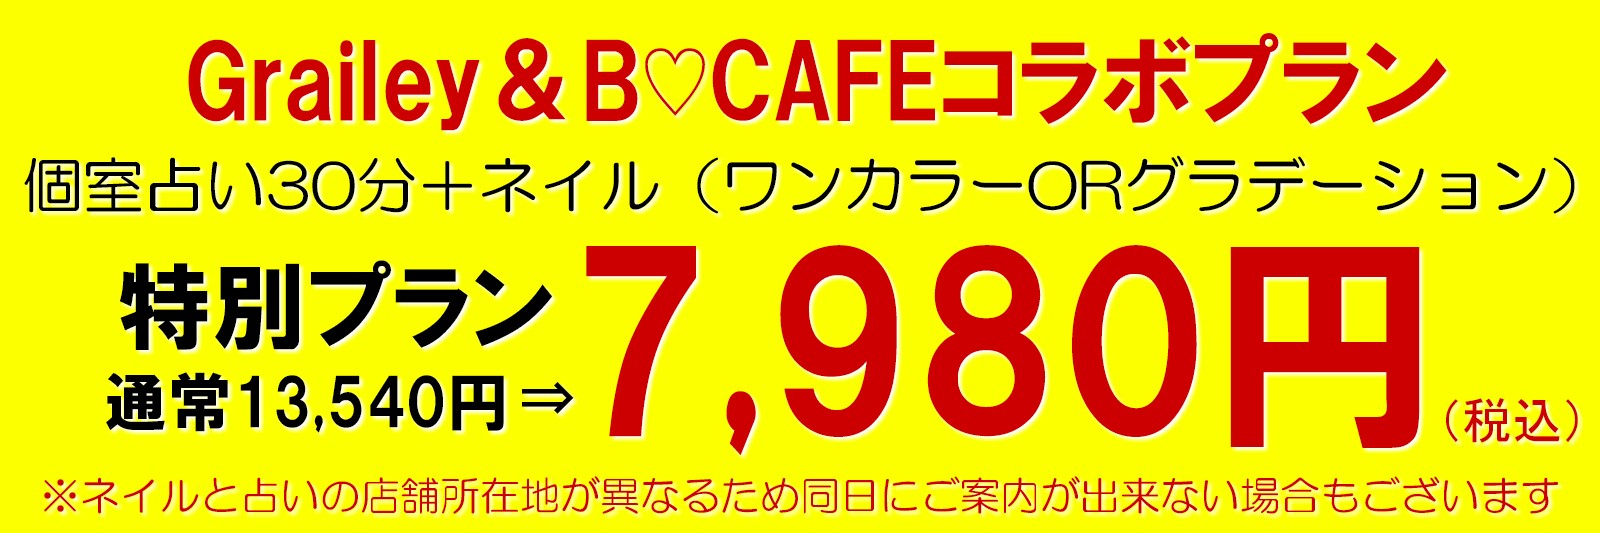 ネイル＆占いなら渋谷ビーカフェのコラボプラン